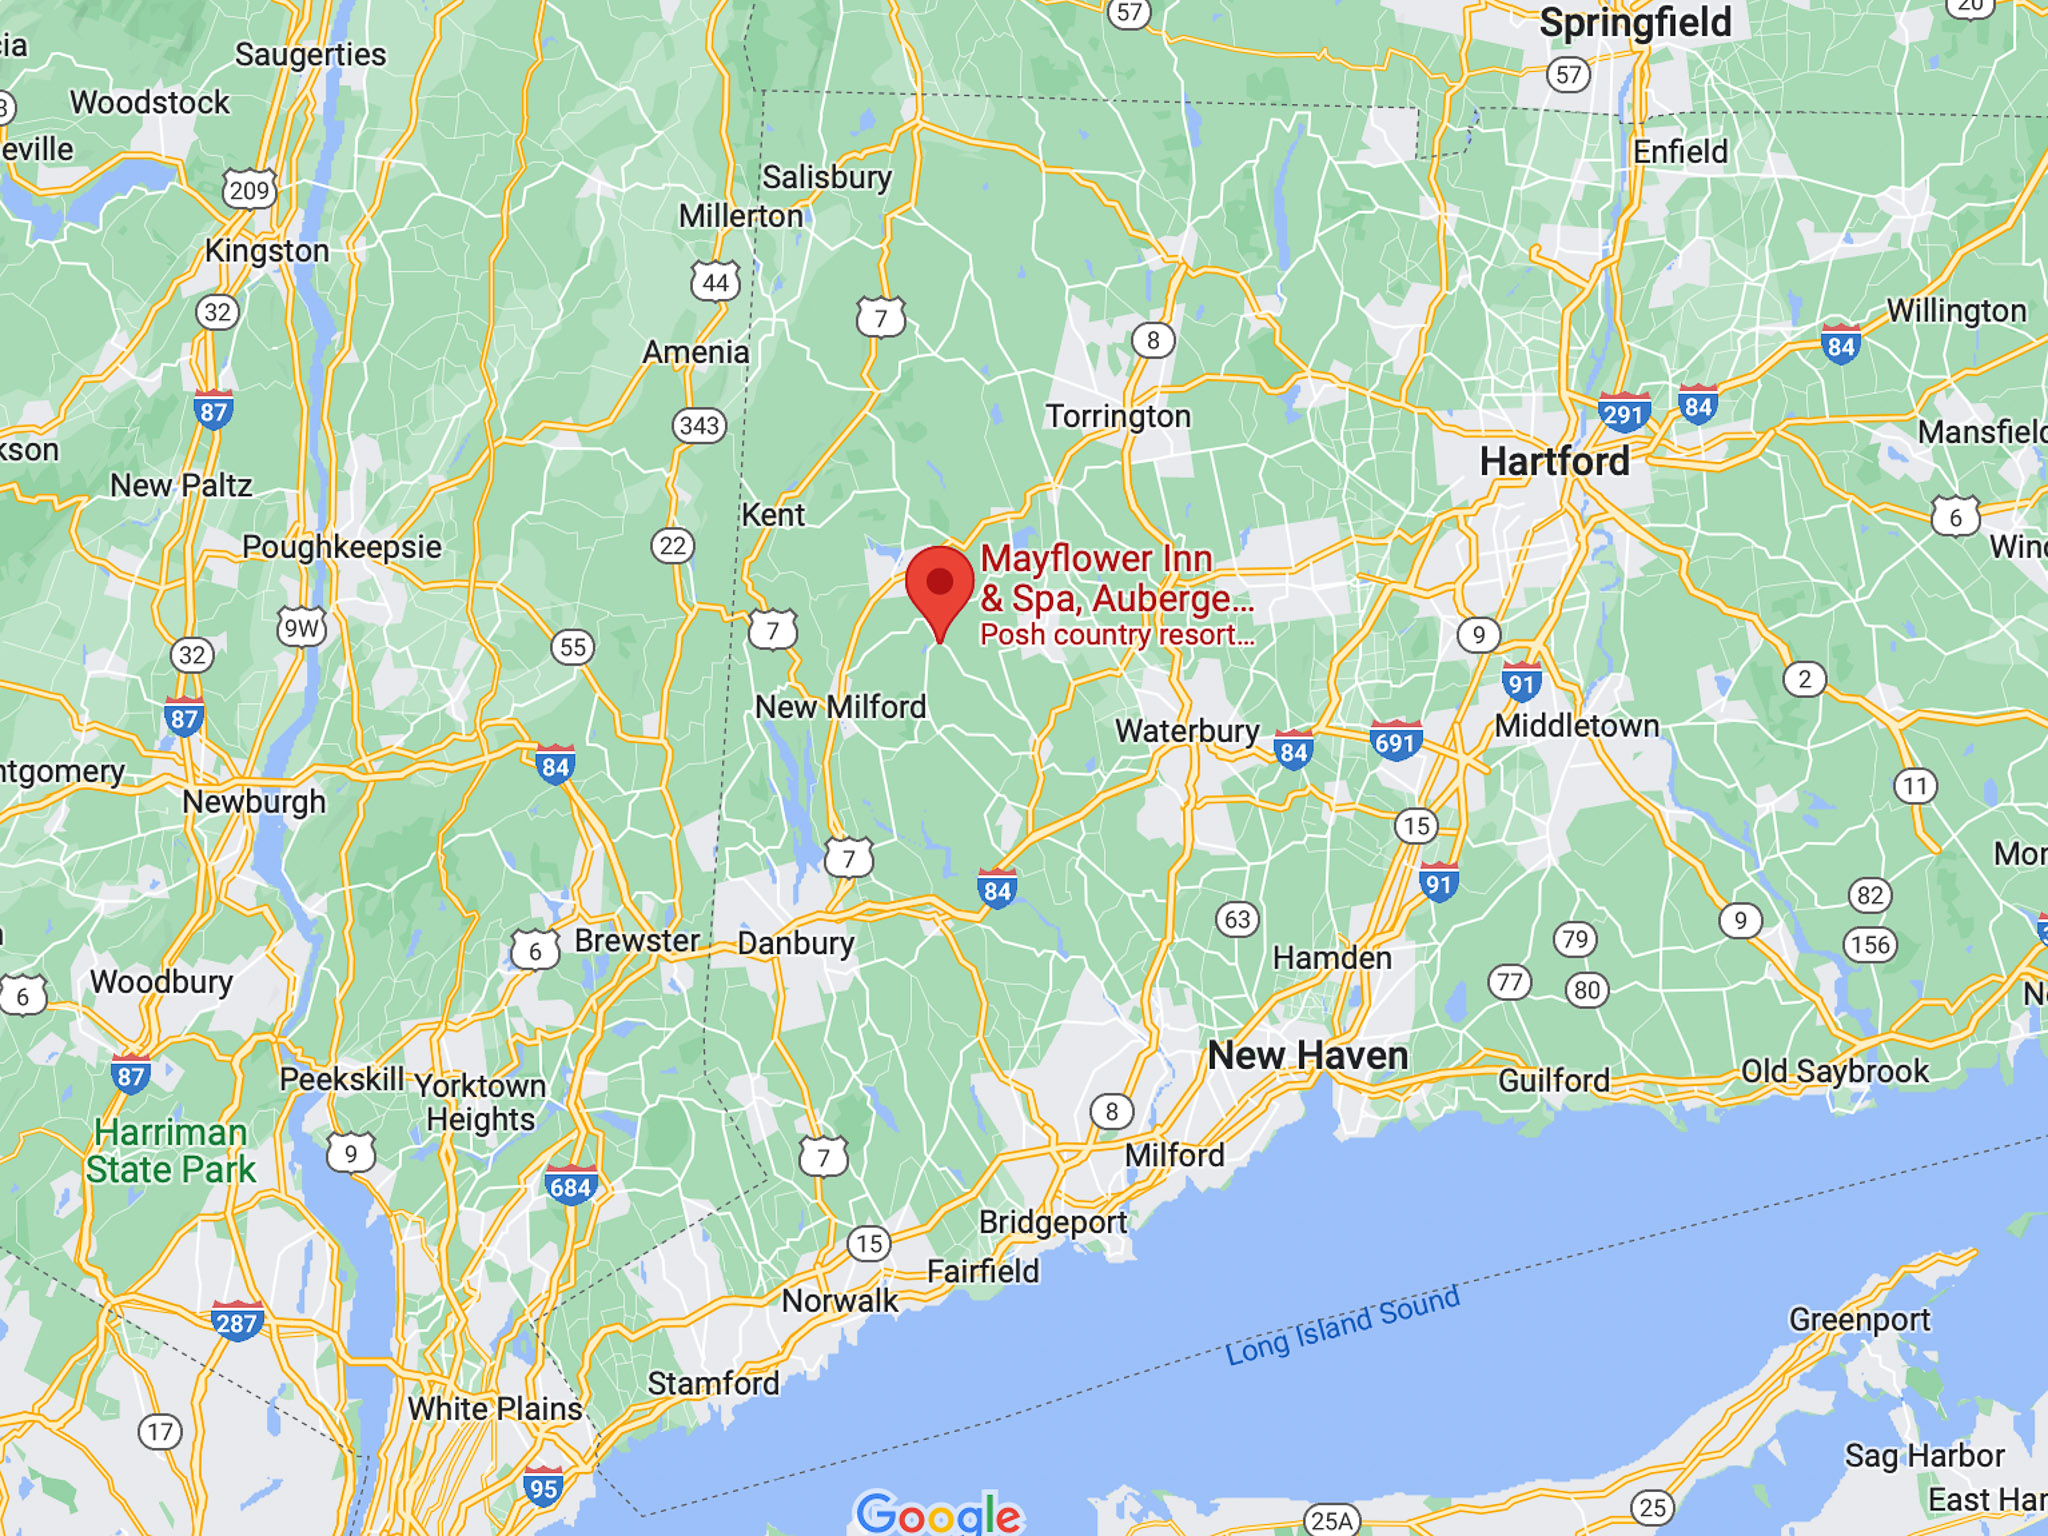 google maps image of mayflower inn